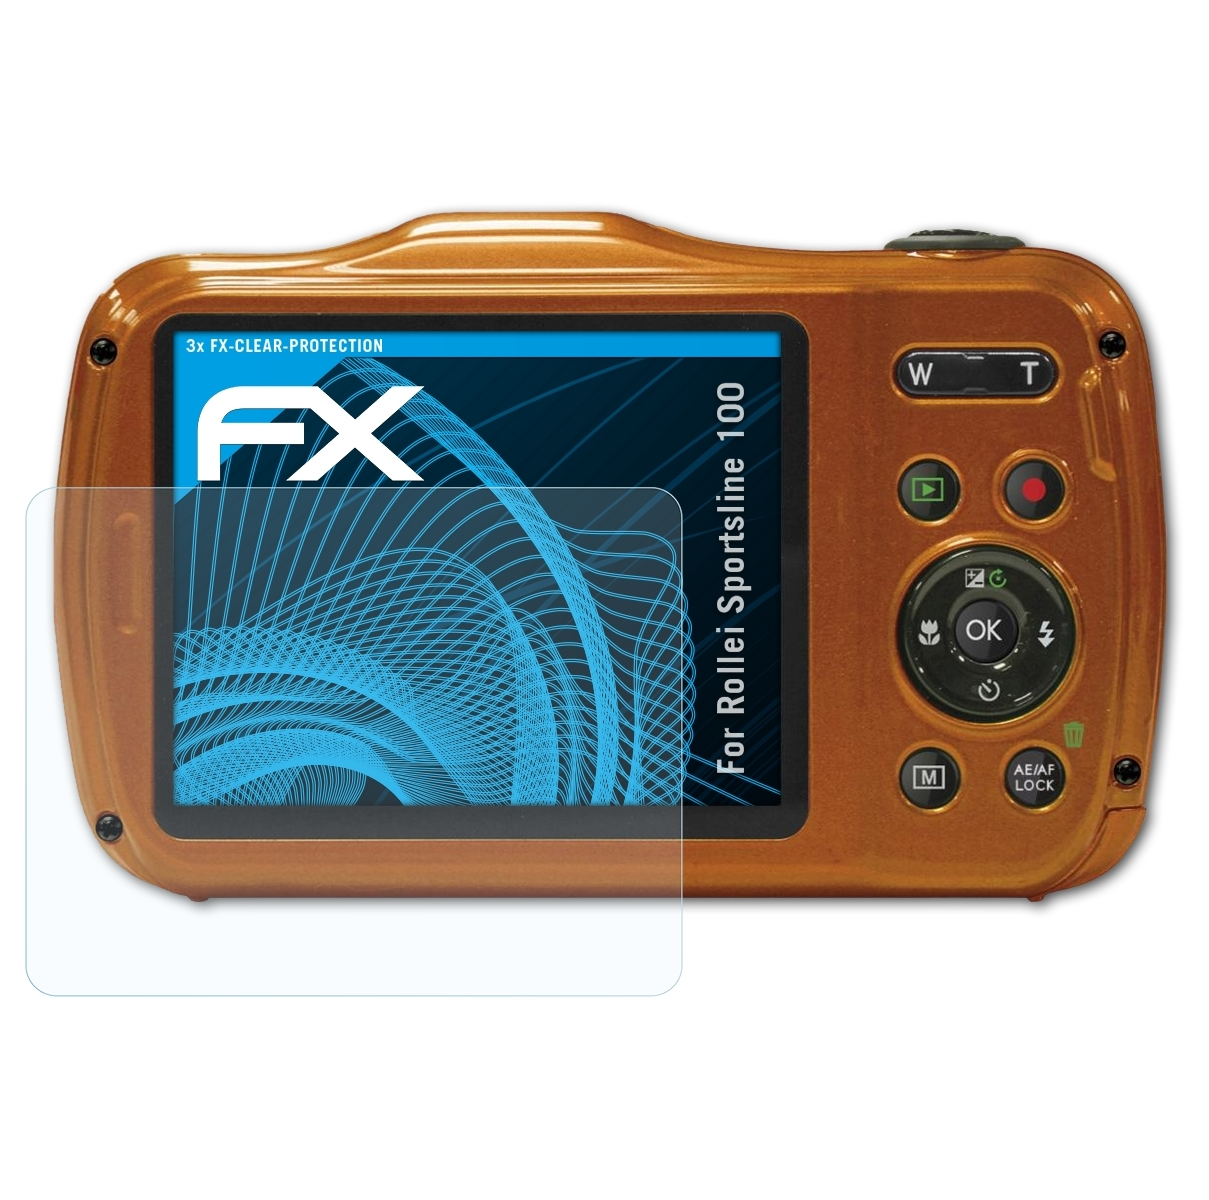 FX-Clear Sportsline Displayschutz(für Rollei 3x ATFOLIX 100)